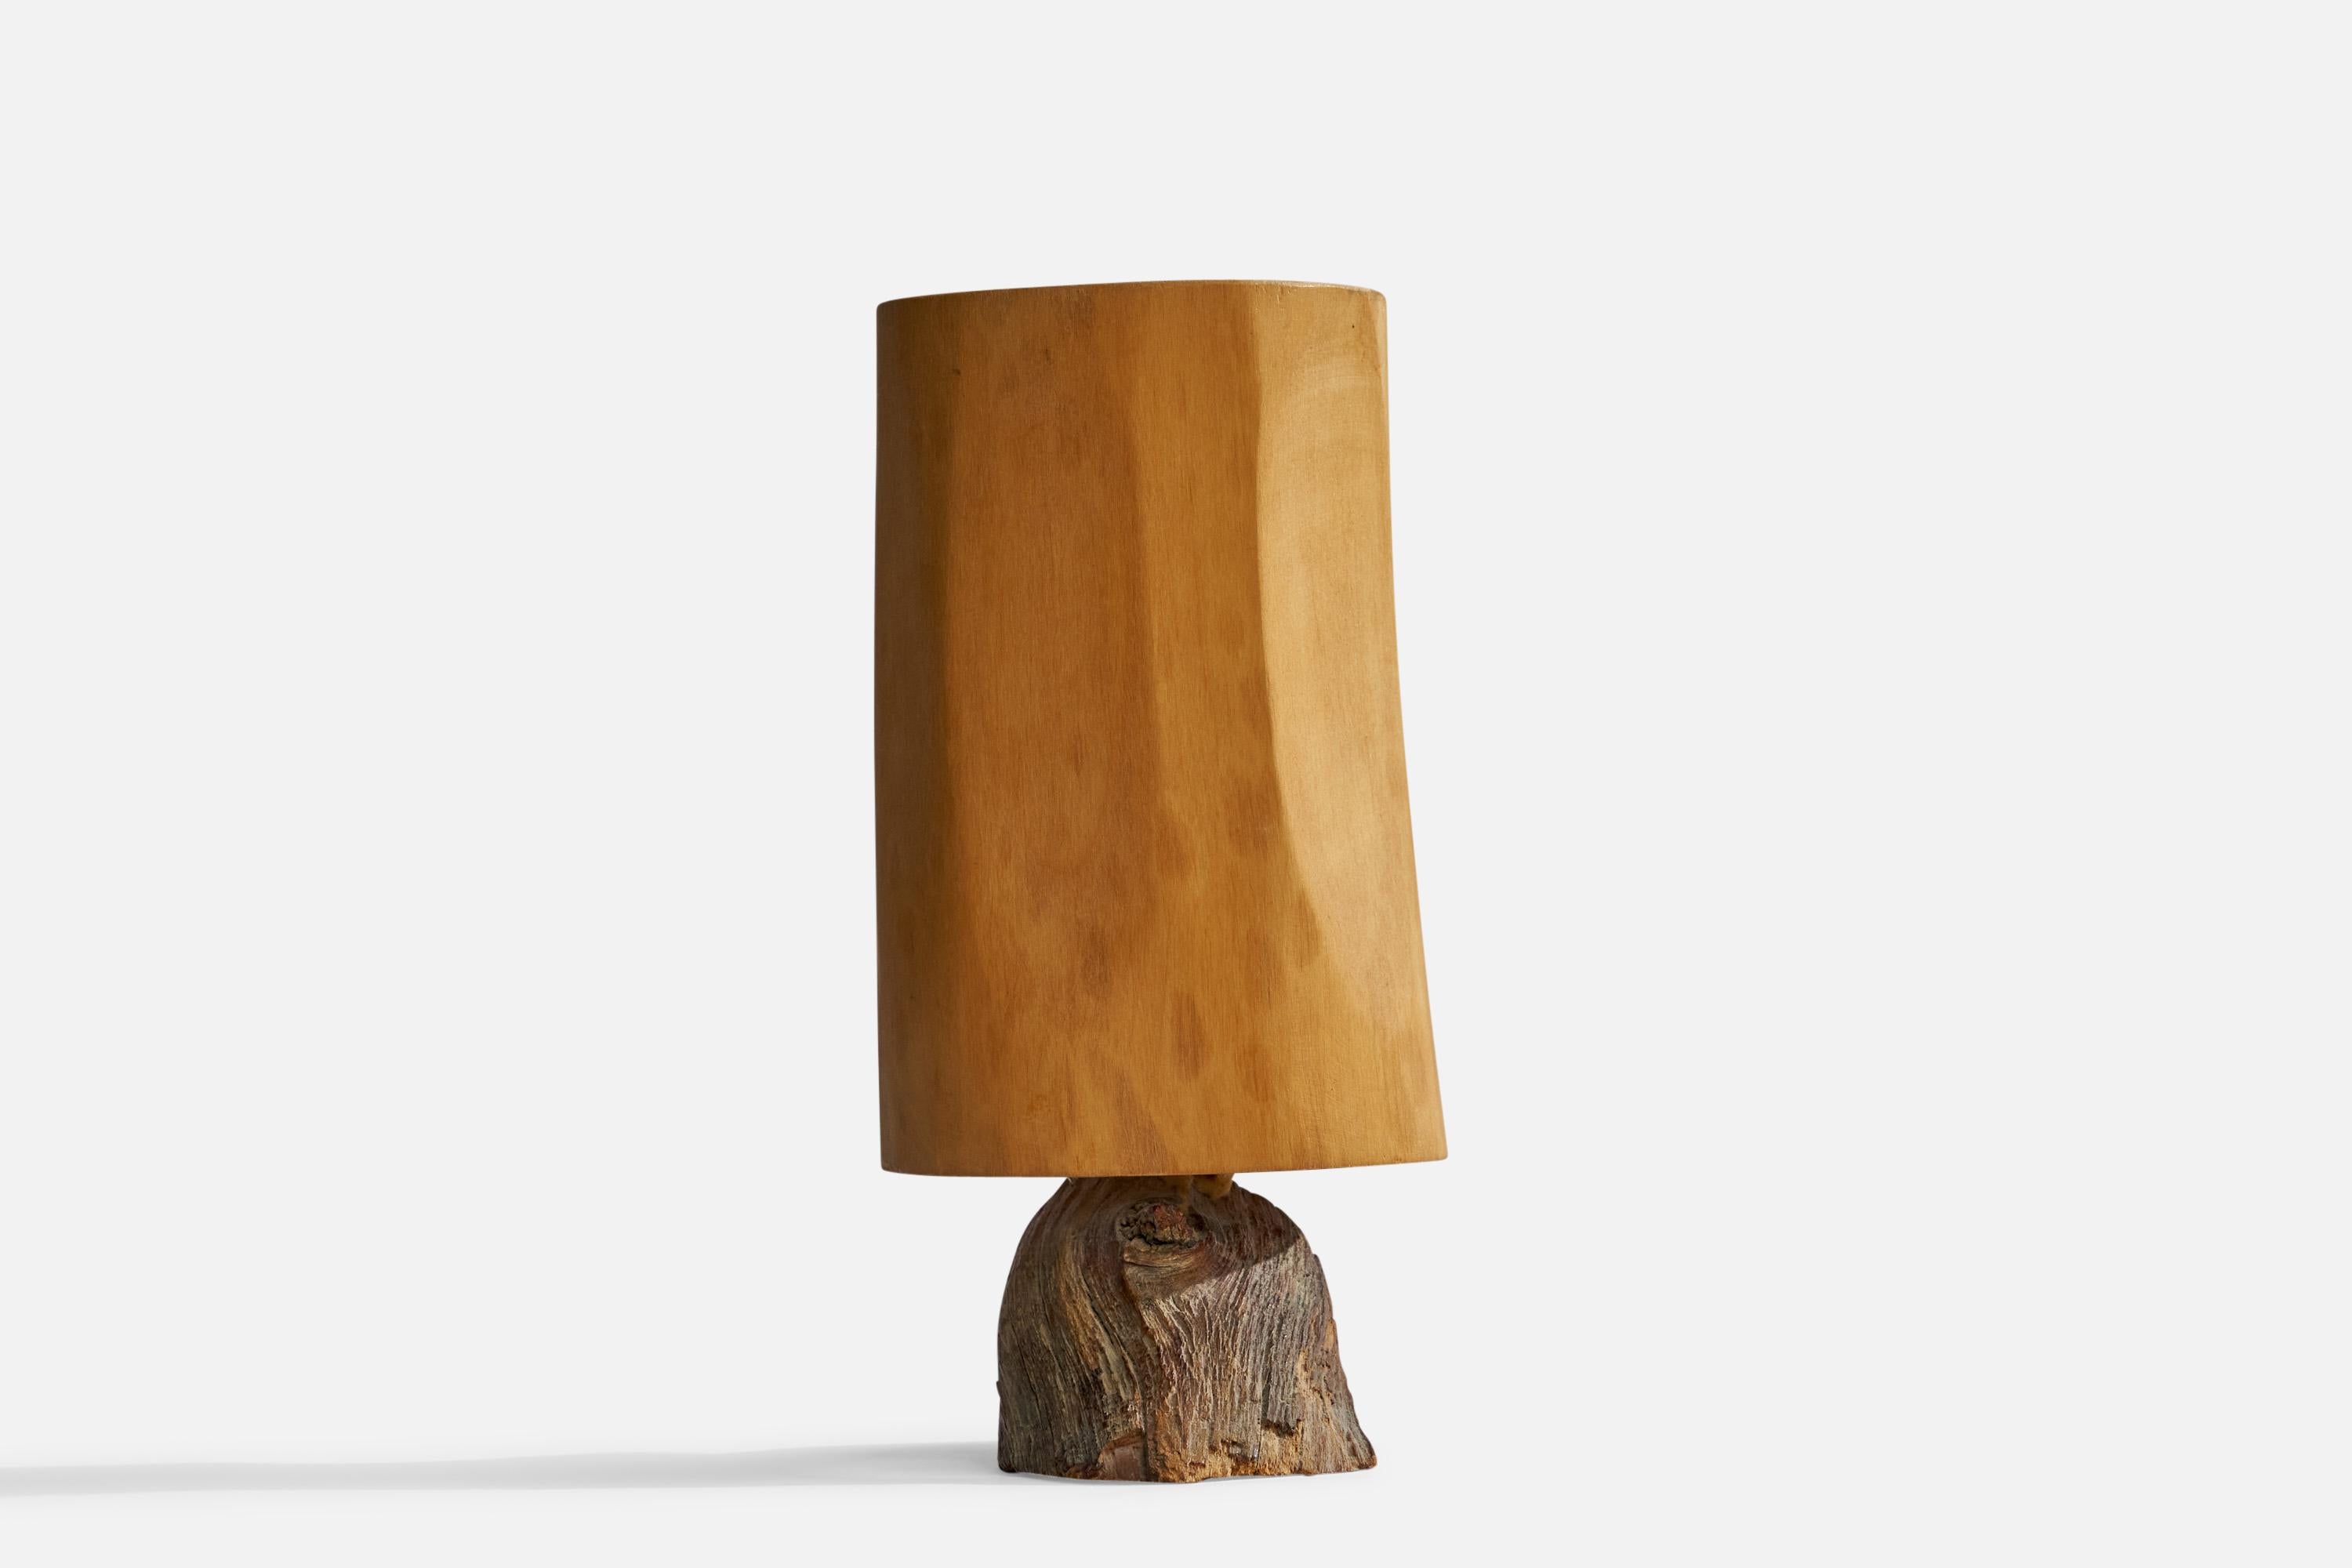 Lampe de table en bois sculpté et bois flotté, conçue et produite par Kurt Schmidt, Suède, datée de 1980.

Dimensions globales (pouces) : 8